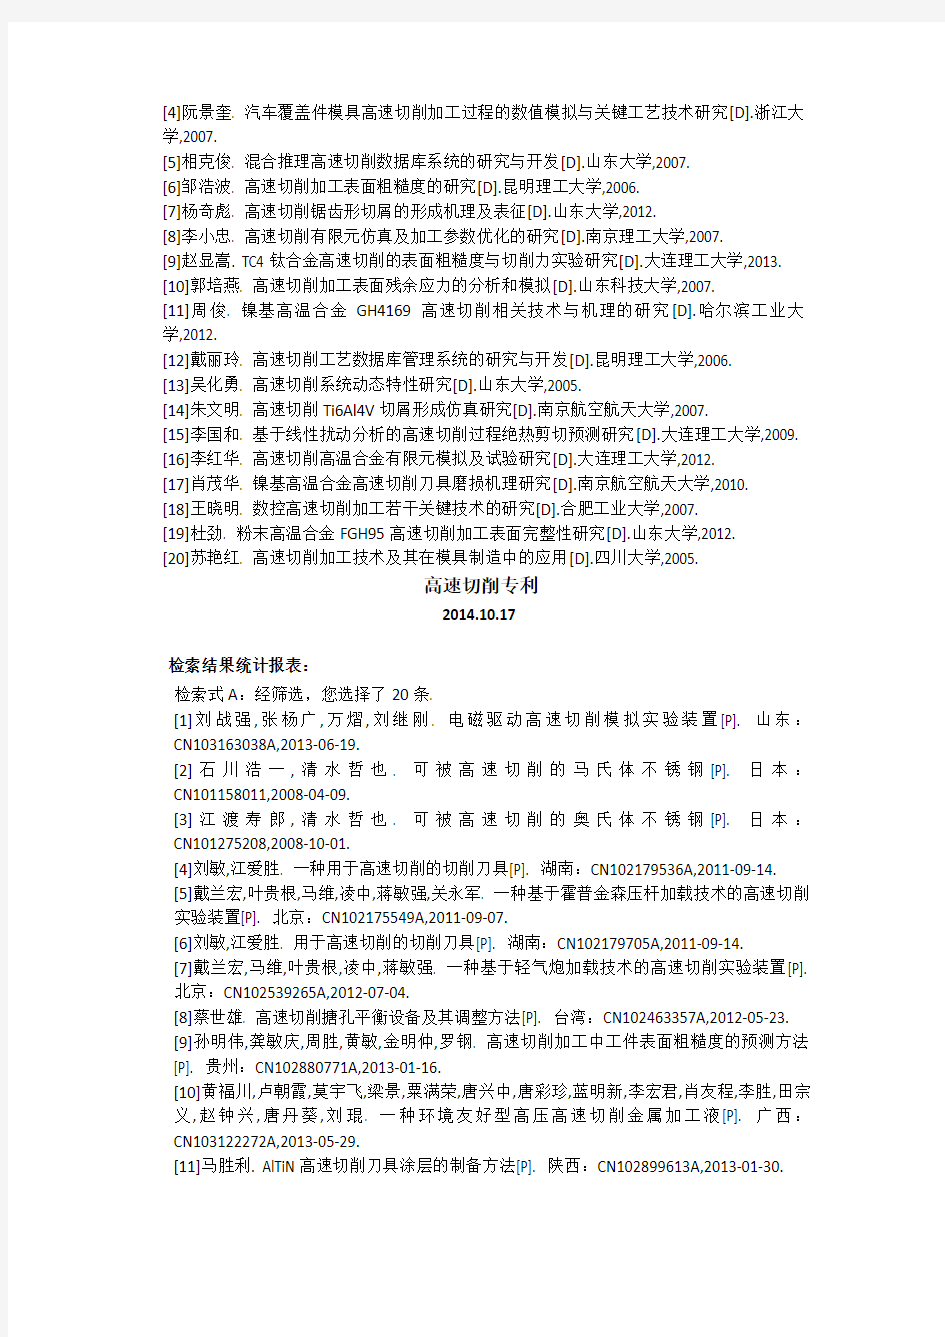 中国知网特种文献文献检索上机实践报告